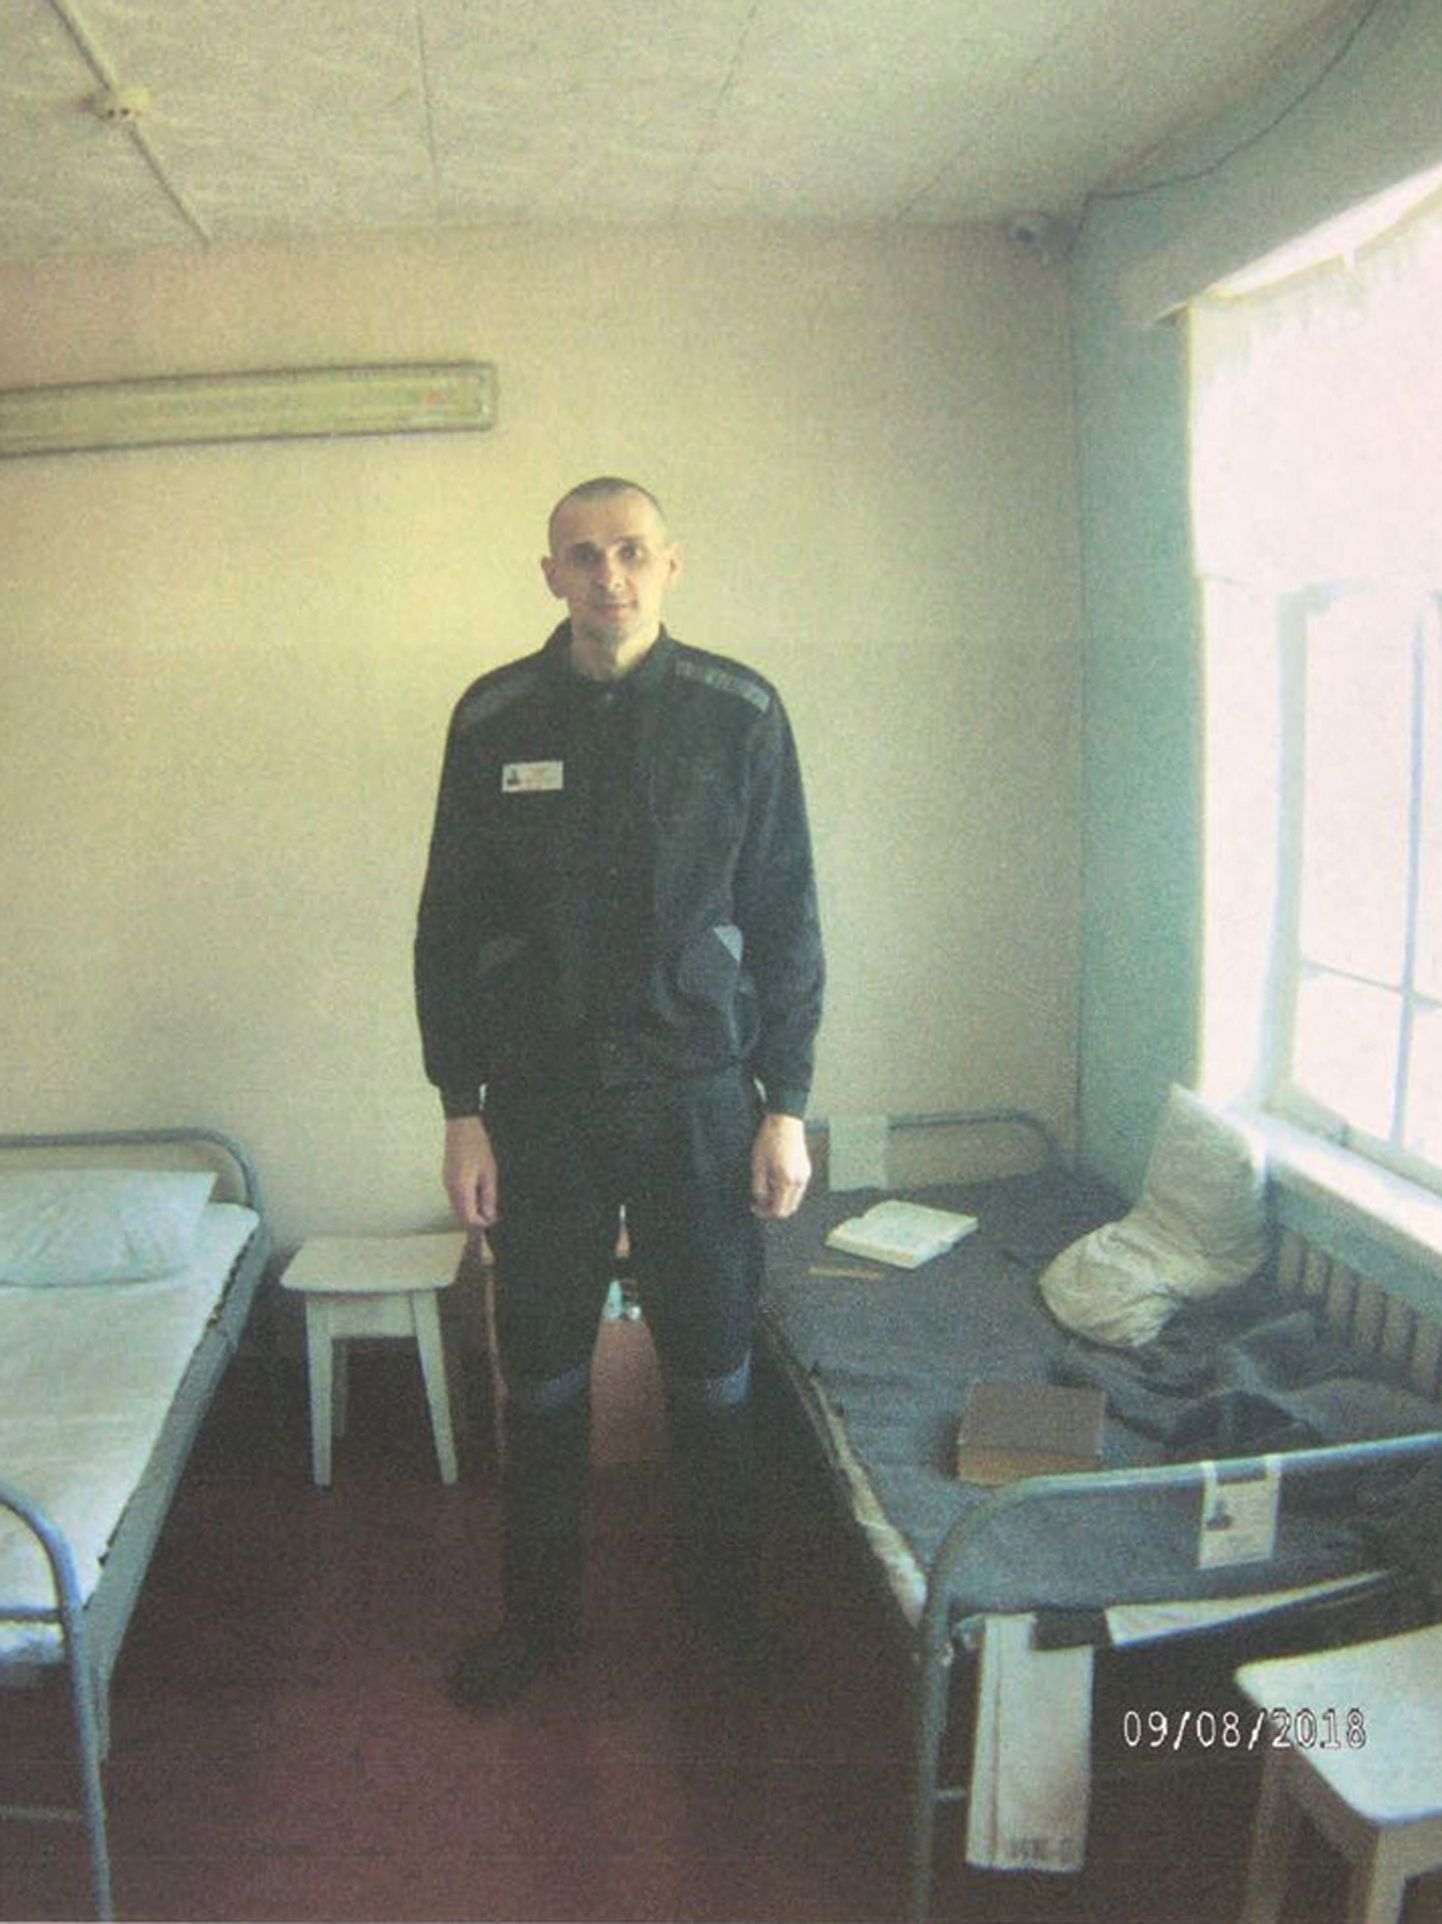 Vene vanglaameti tehtud pilt Oleg Sentsovist selle aasta 9. augustil.